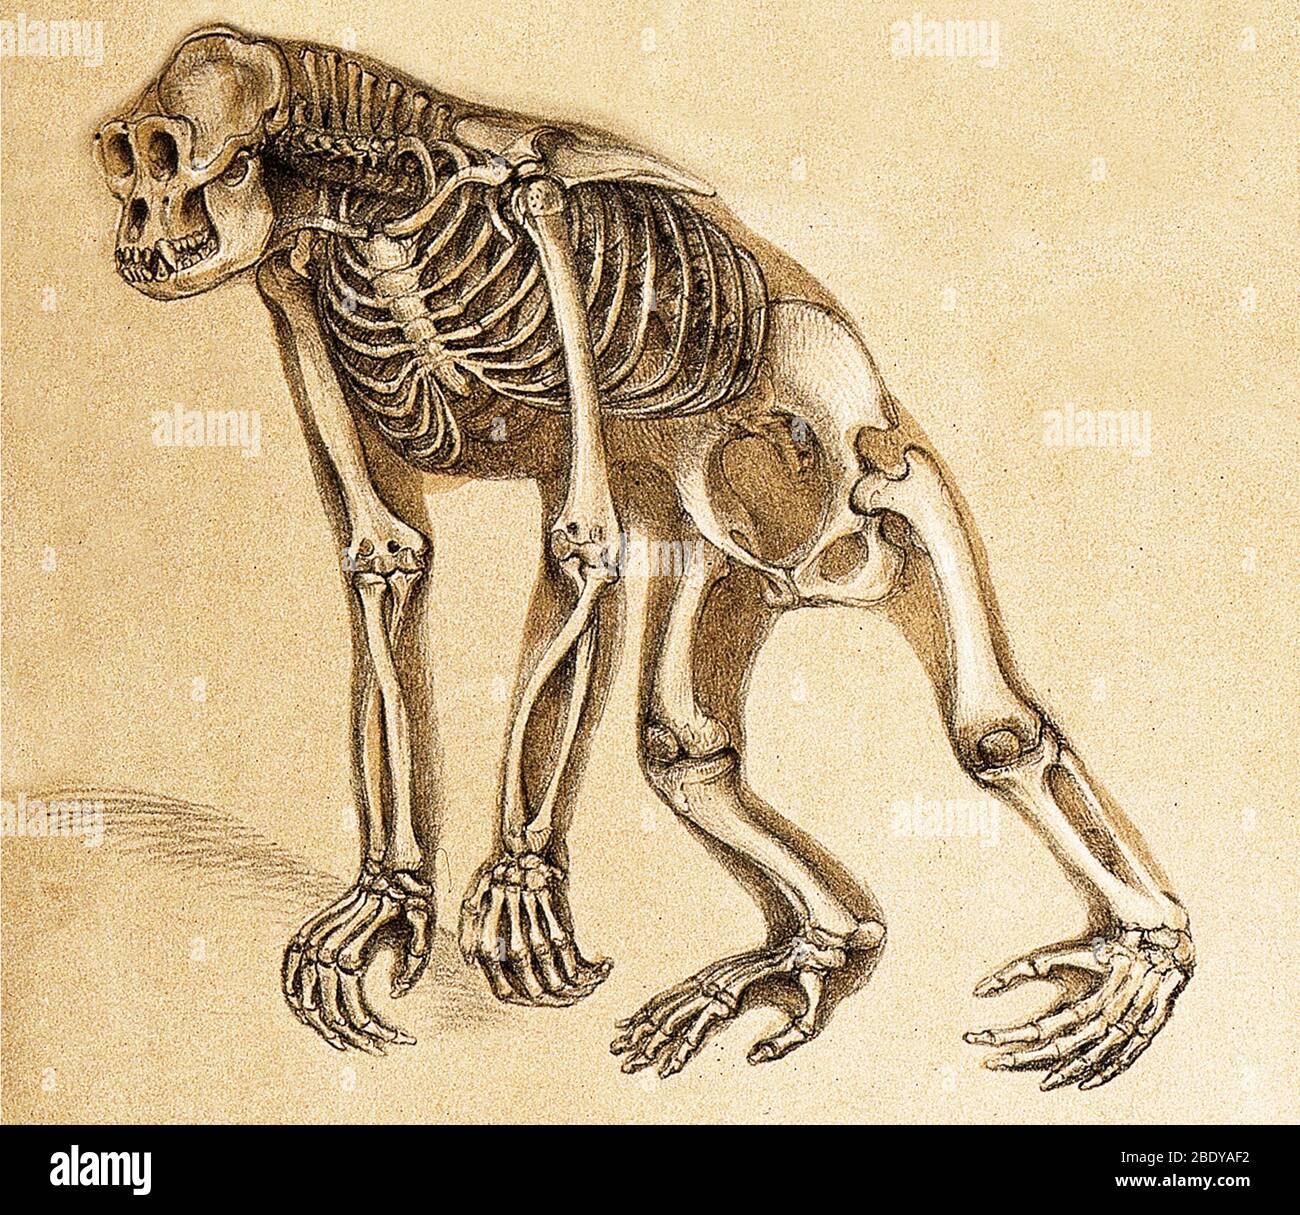 Skeleton of Ape, 1860 Stock Photo